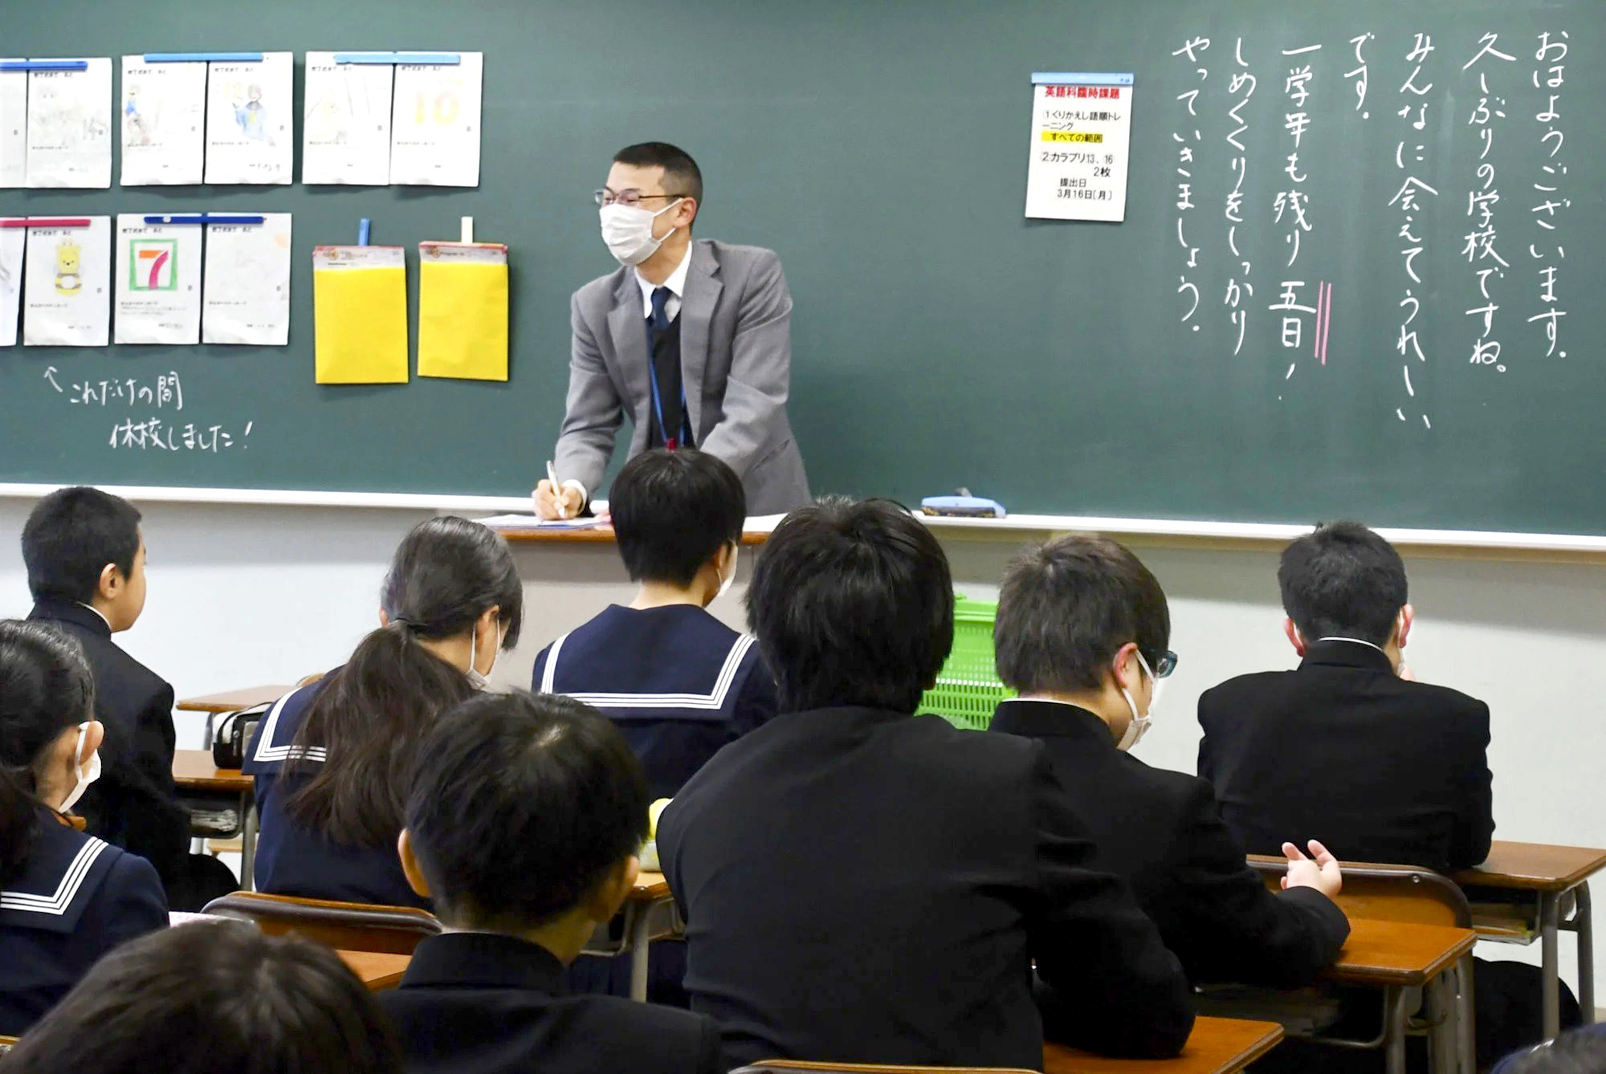 Giáo viên đứng lớp tại một trường trung học cơ sở ở thành phố Toyama, tỉnh Toyama, Nhật Bản - Nguồn ảnh: Kyodo